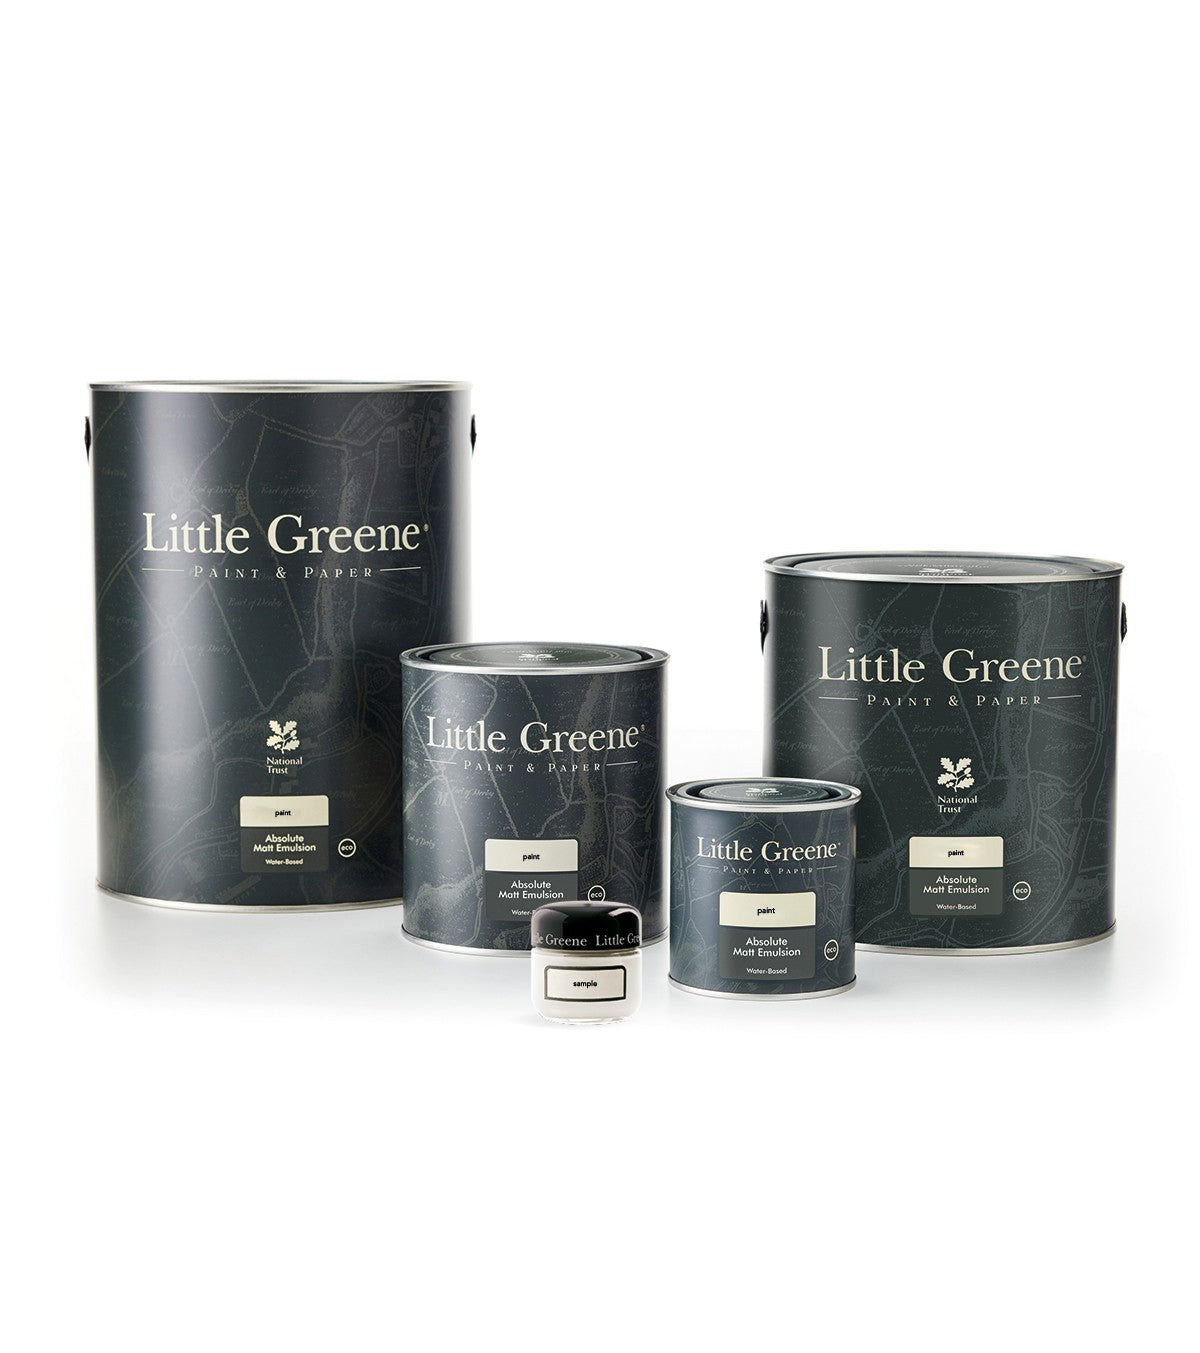 Little Greene Farbe - Ambleside (304)